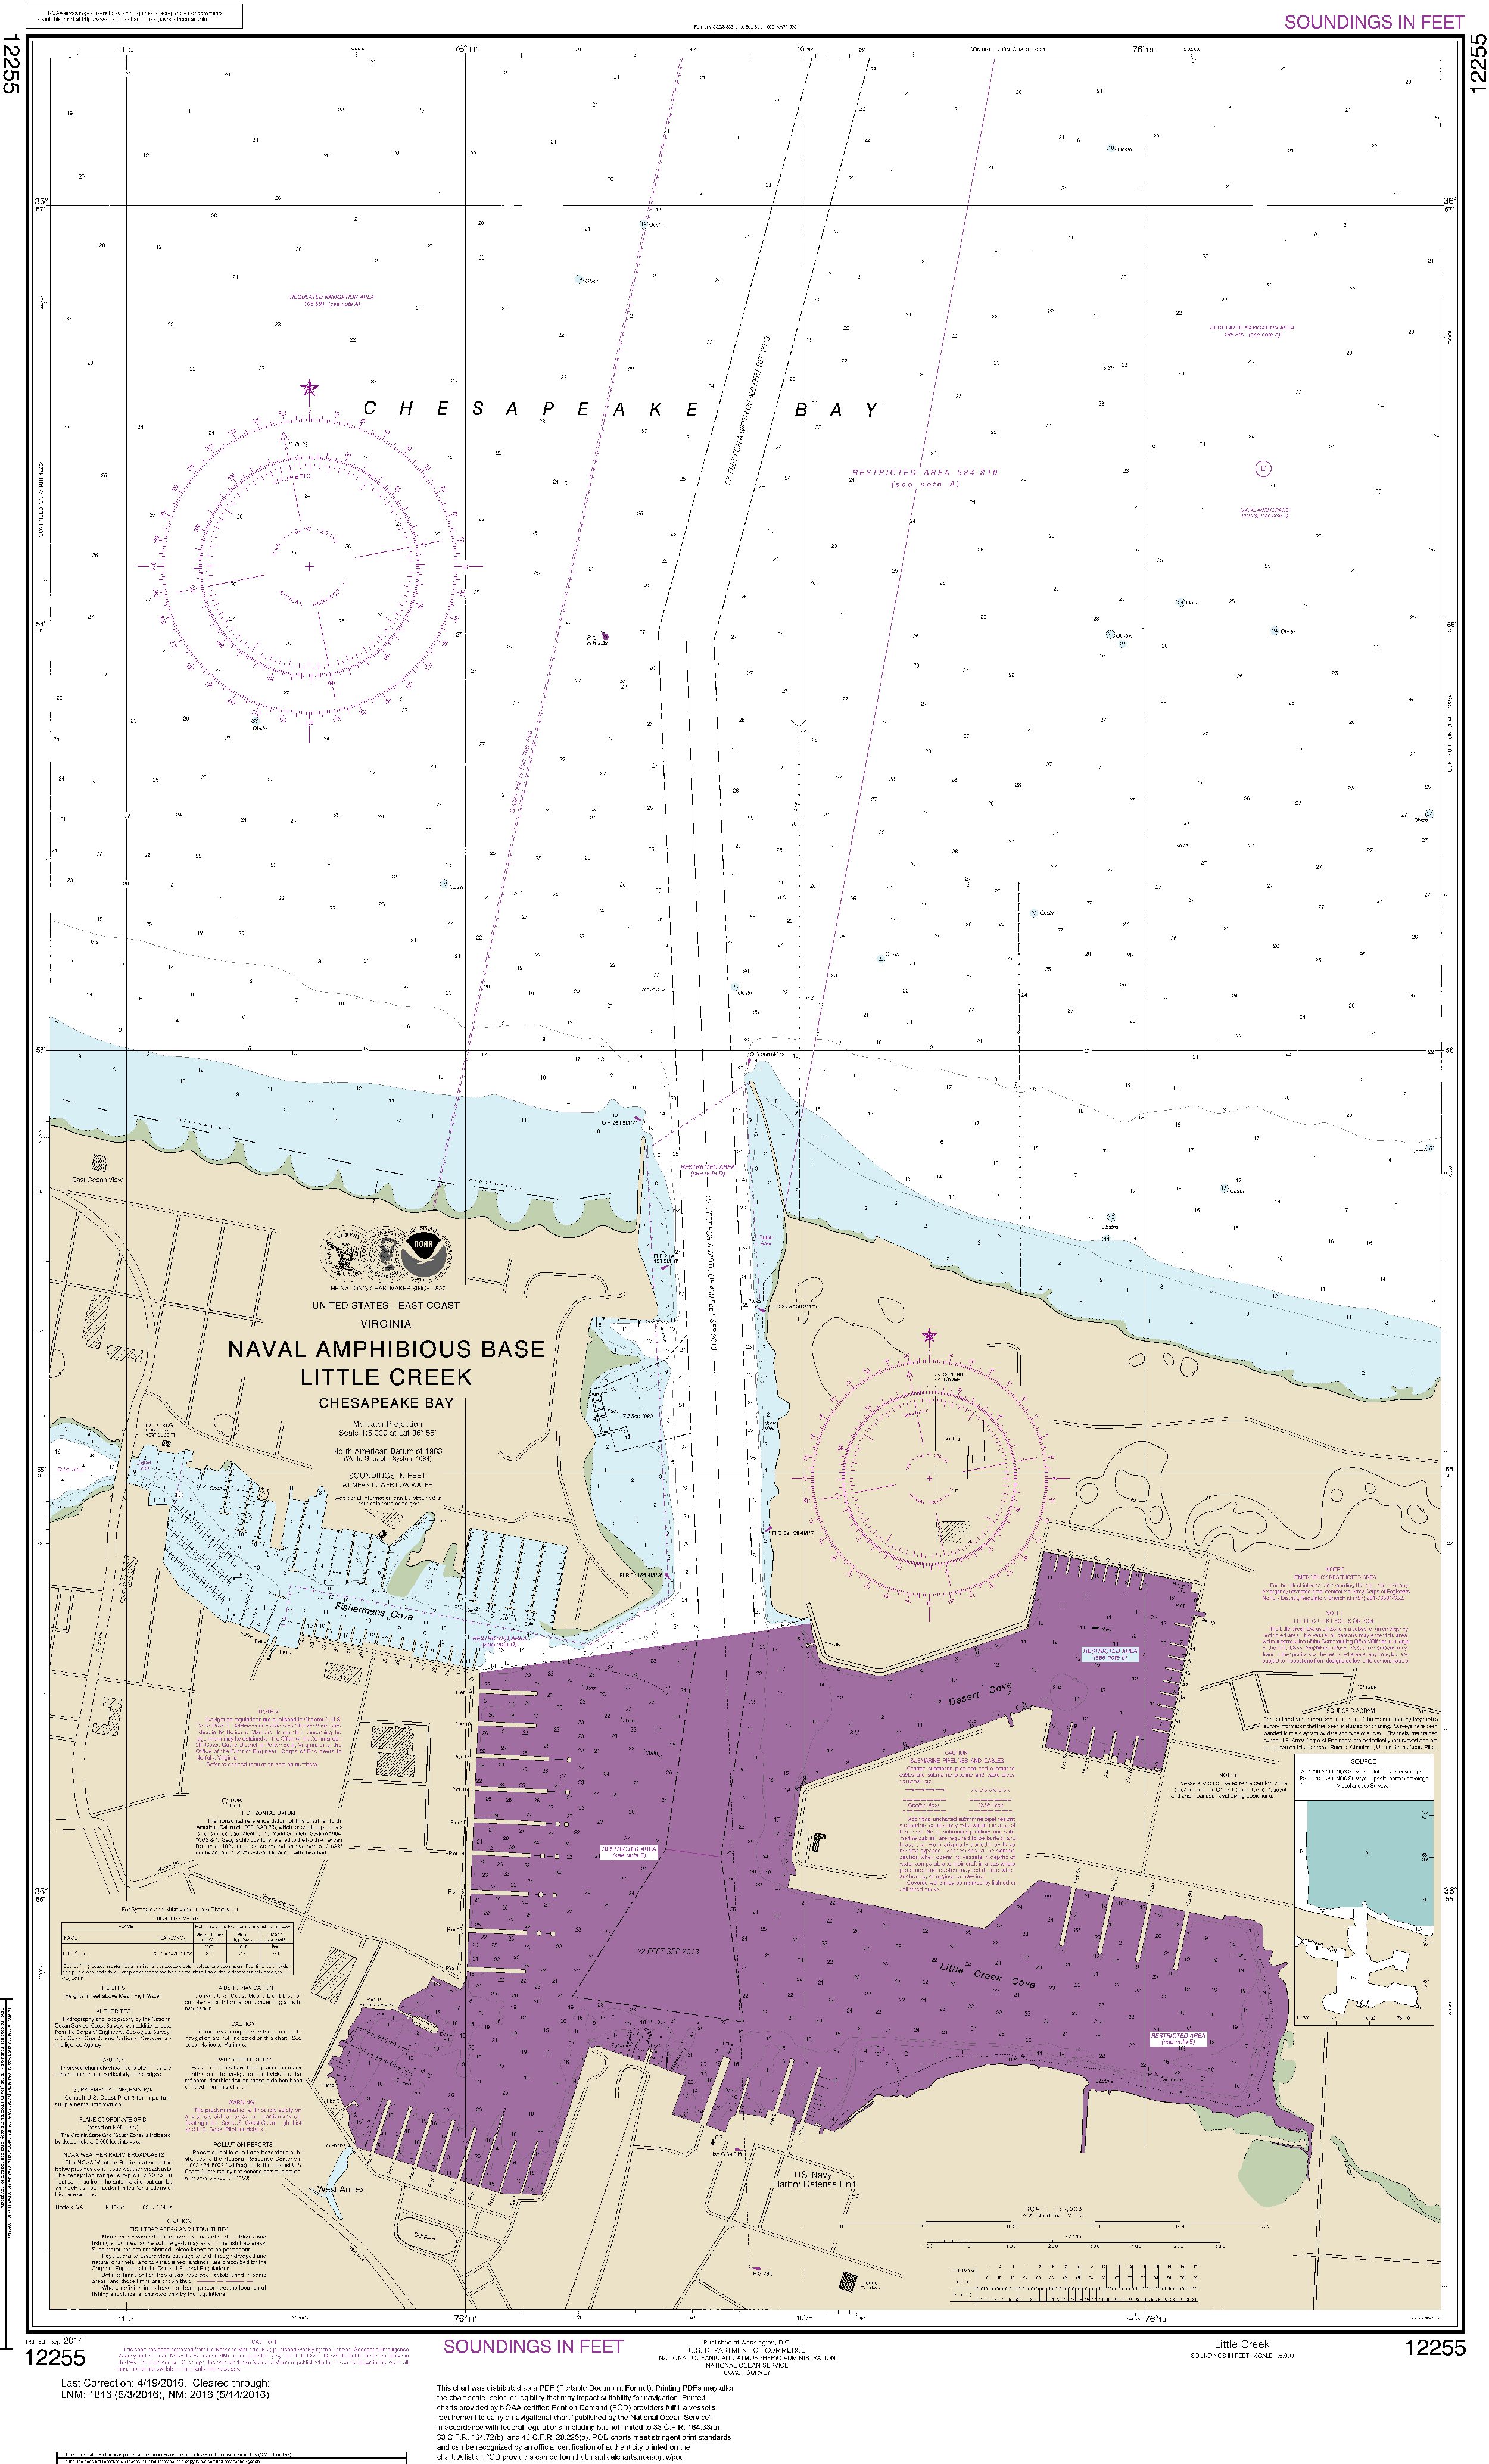 NOAA Nautical Chart 12255: Little Creek Naval Amphibious Base